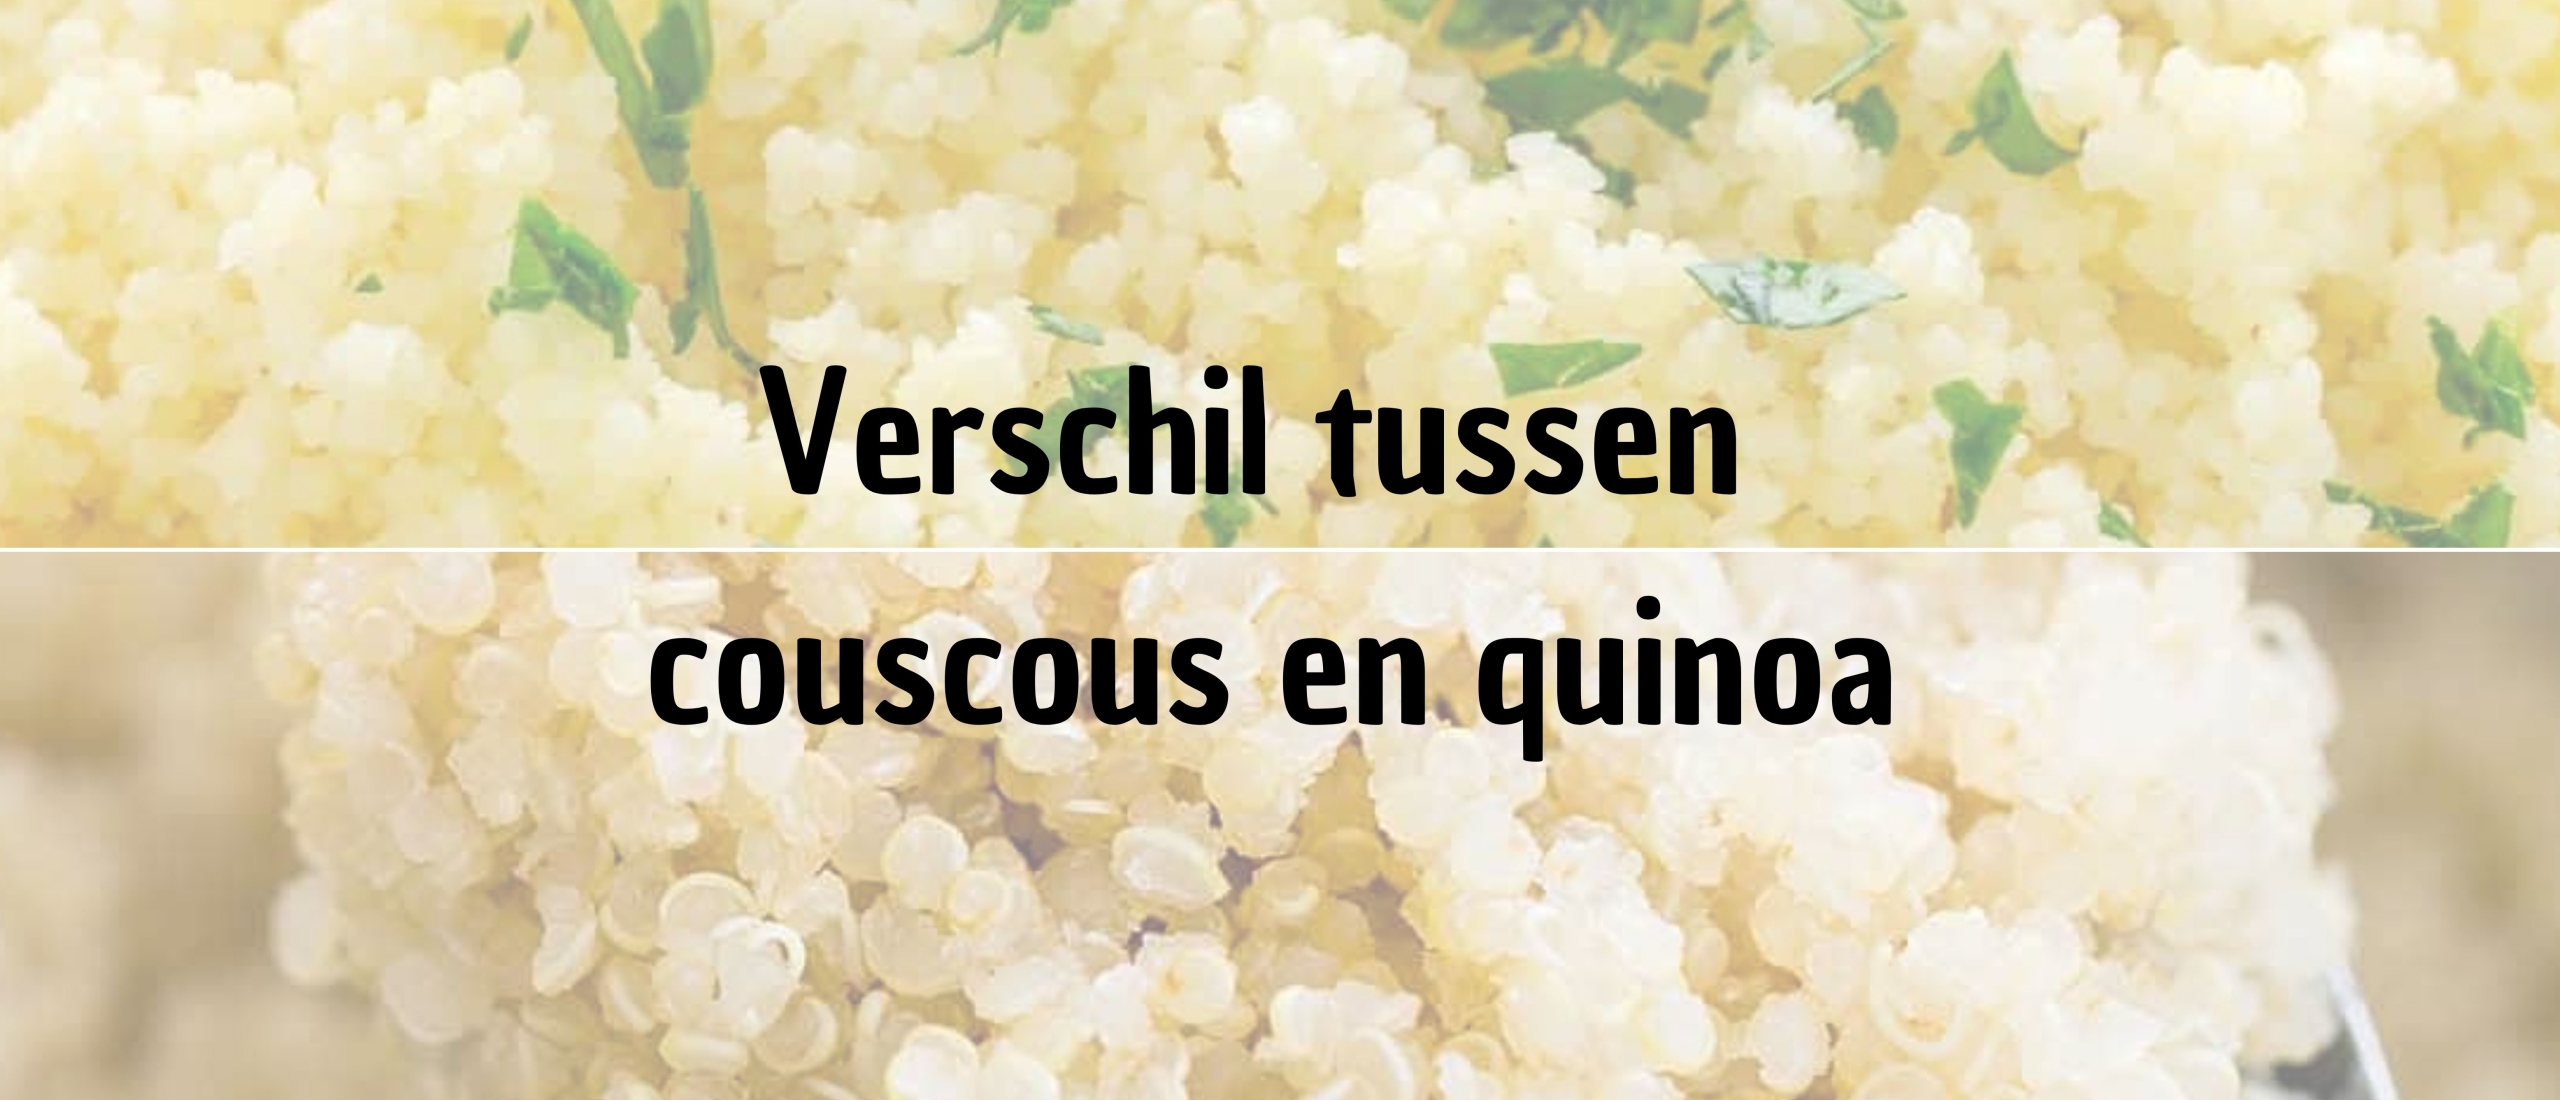 wat is het verschil tussen couscous en quinoa